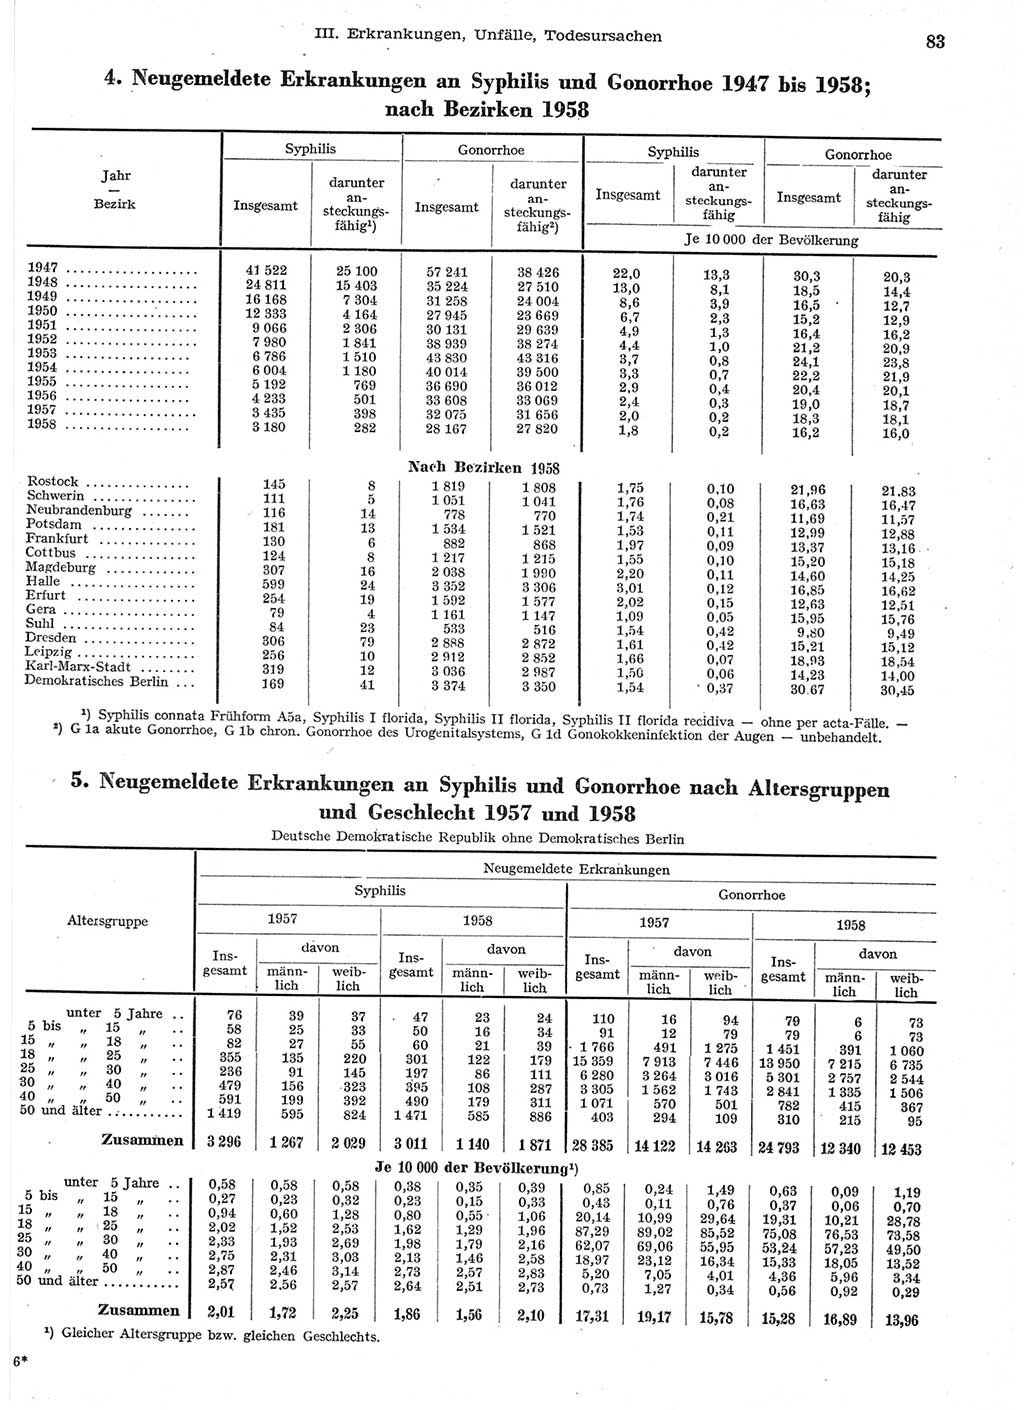 Statistisches Jahrbuch der Deutschen Demokratischen Republik (DDR) 1958, Seite 83 (Stat. Jb. DDR 1958, S. 83)